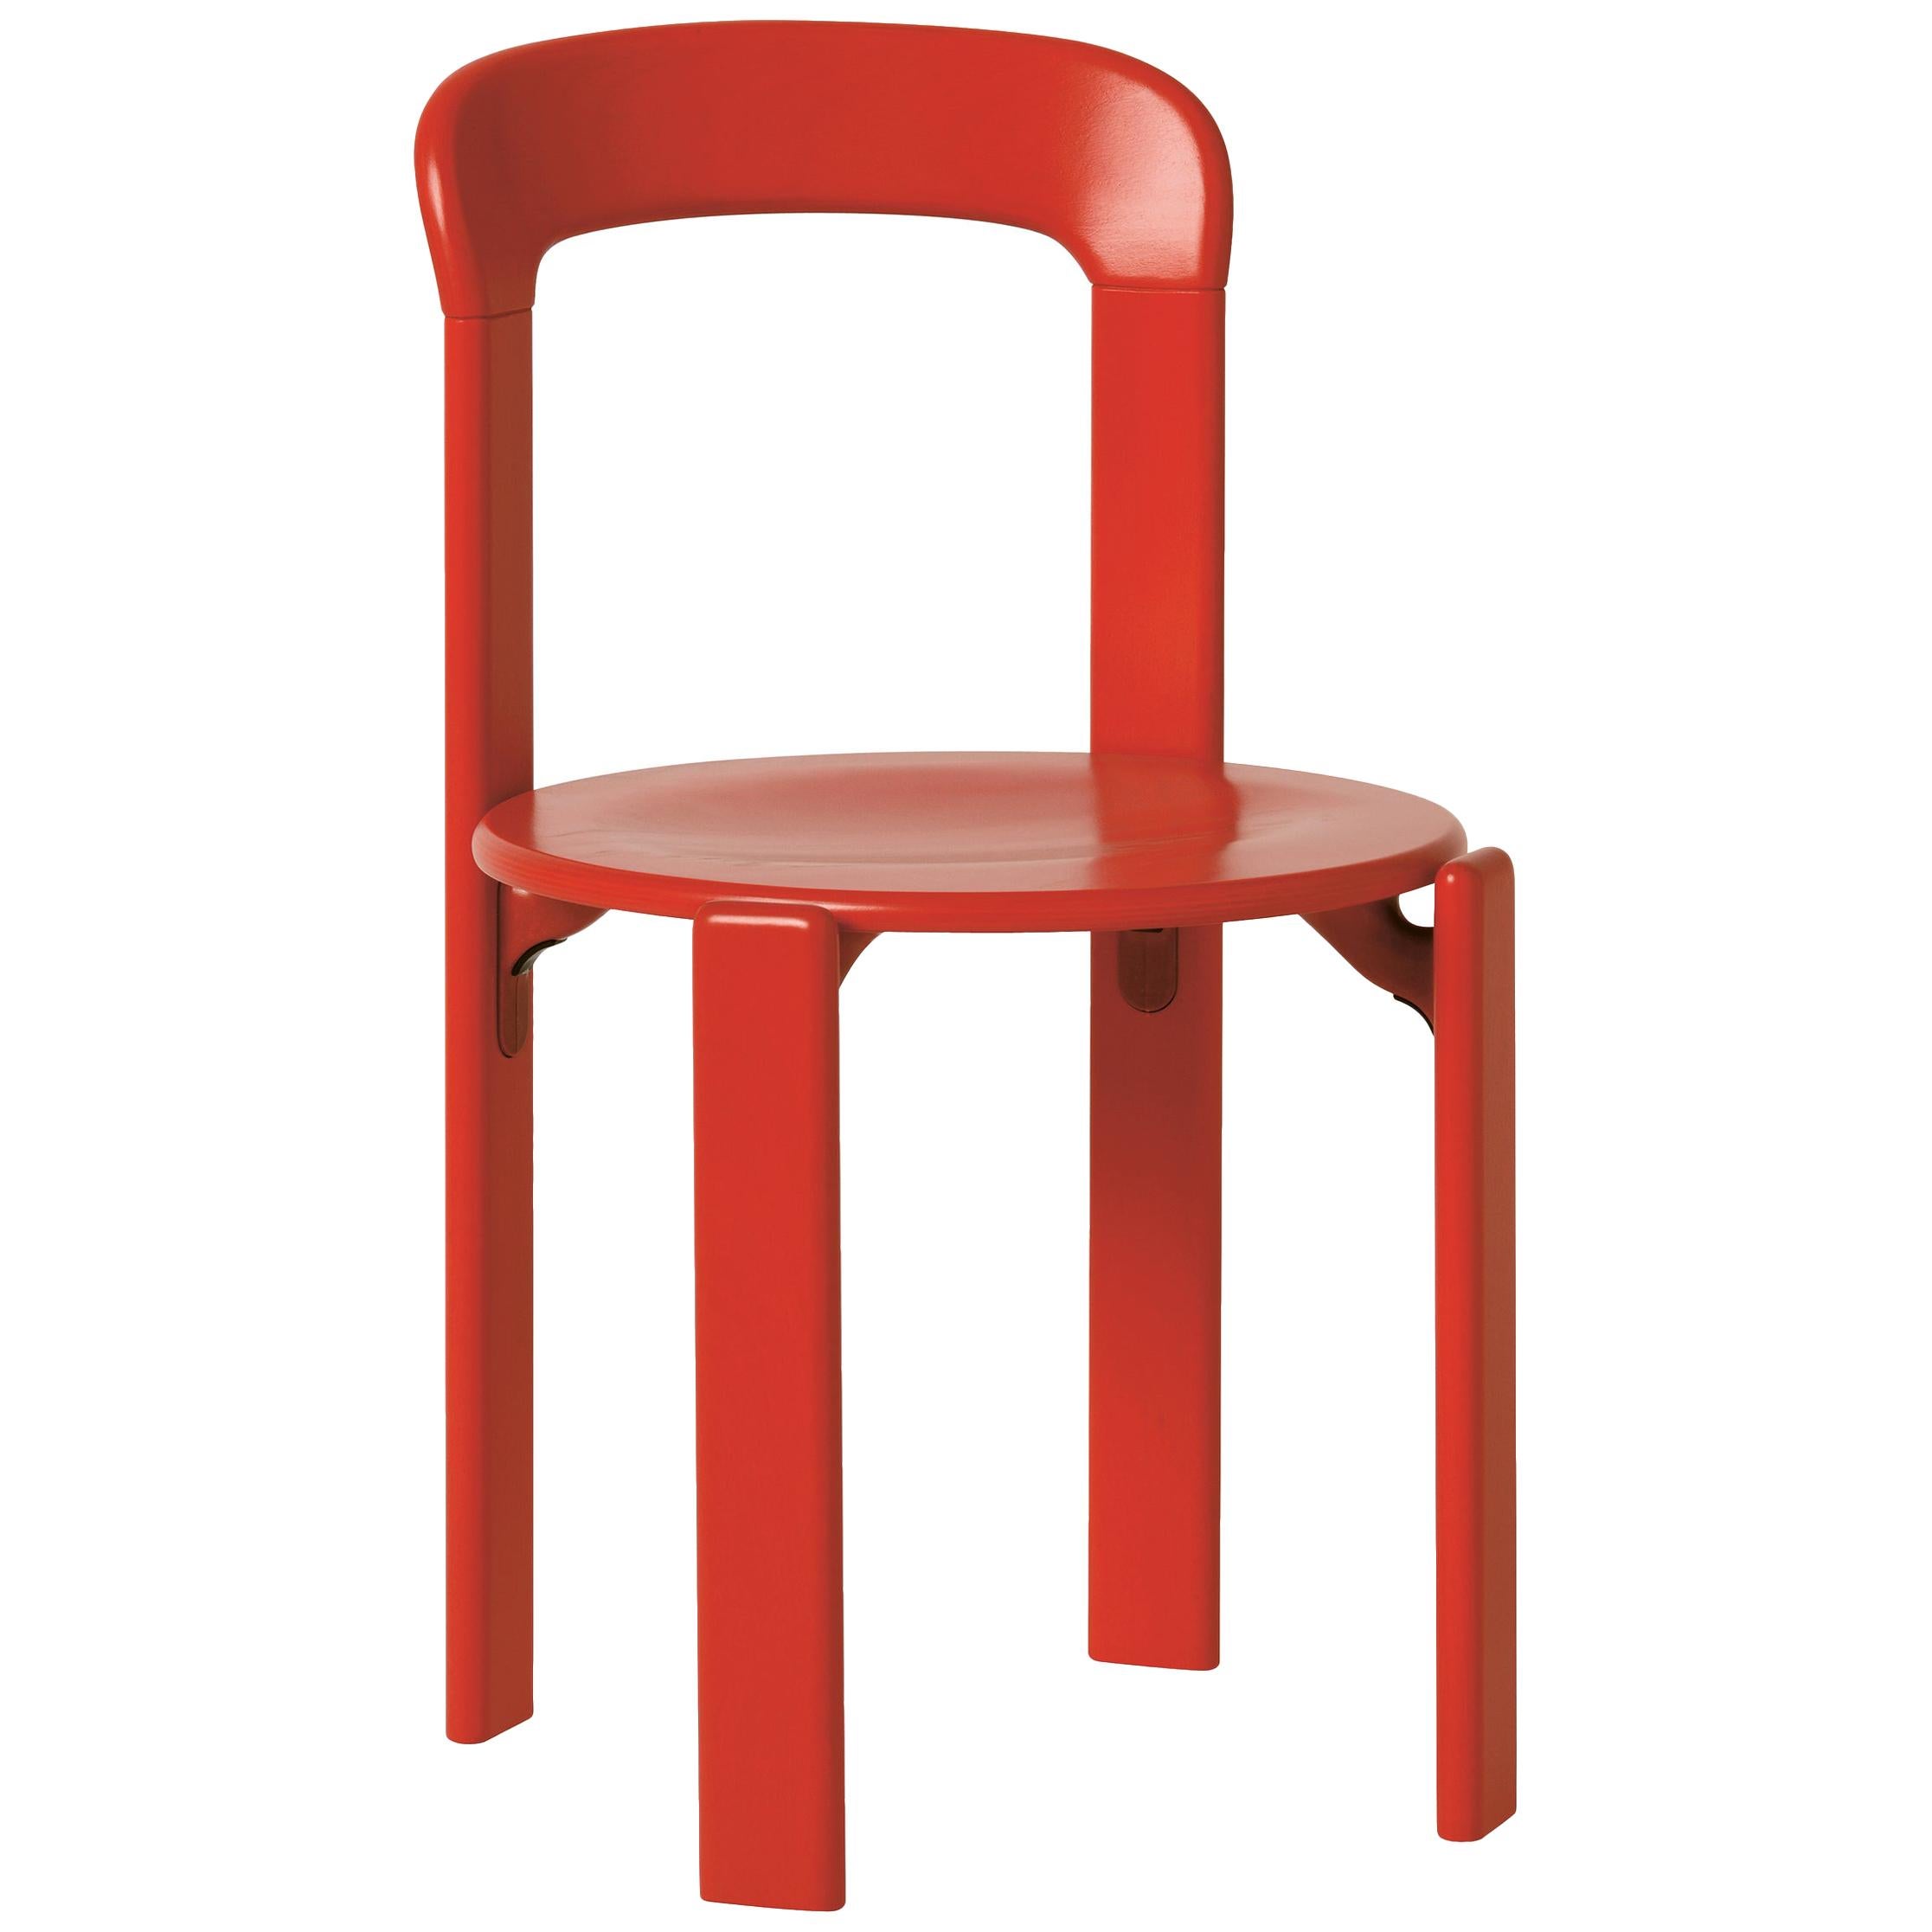 Mid-Century Modern, Rey Red Chair, by Bruno Rey, Design 1971